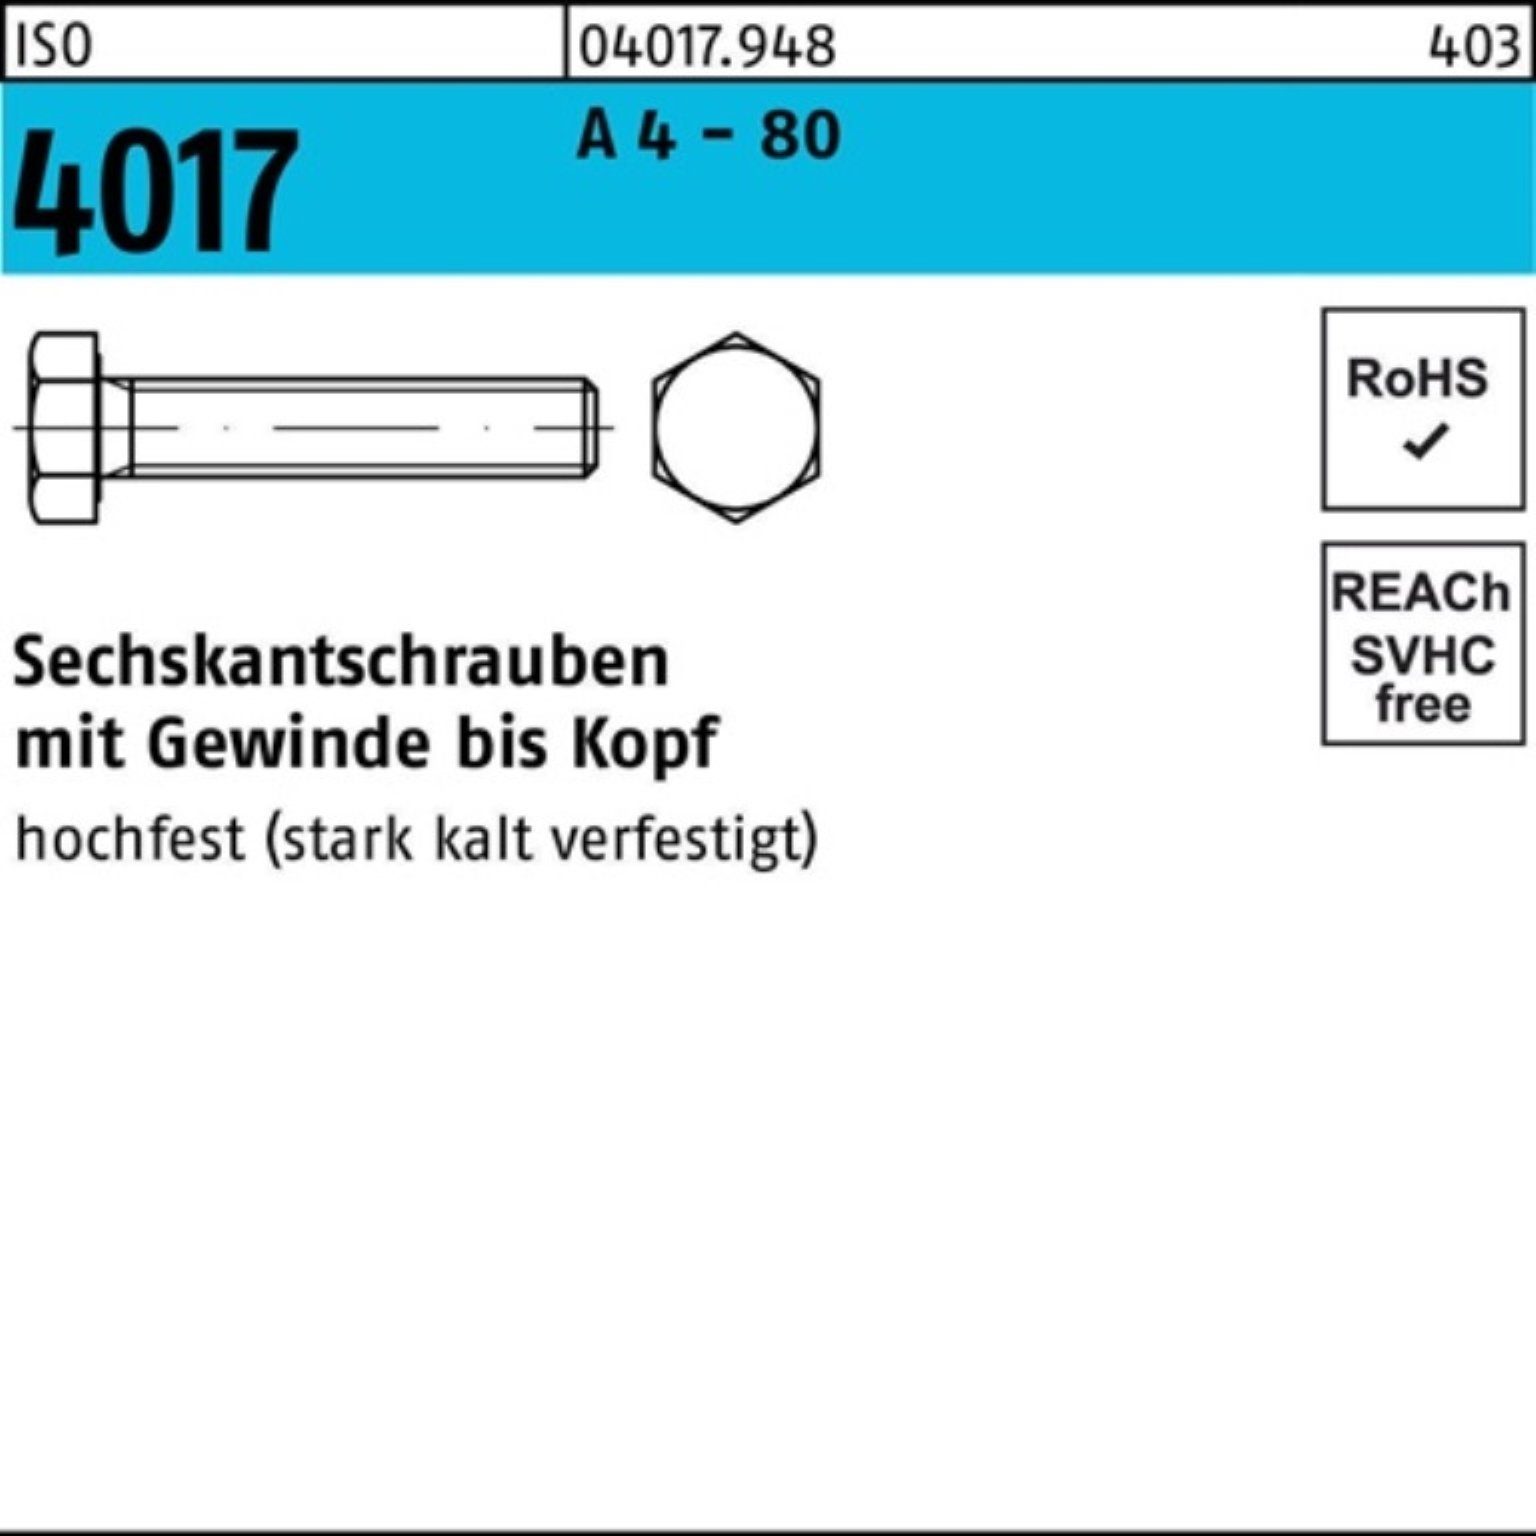 Bufab Sechskantschraube 80 VG 55 100er - ISO 50 IS A M12x Stück 4 Pack Sechskantschraube 4017